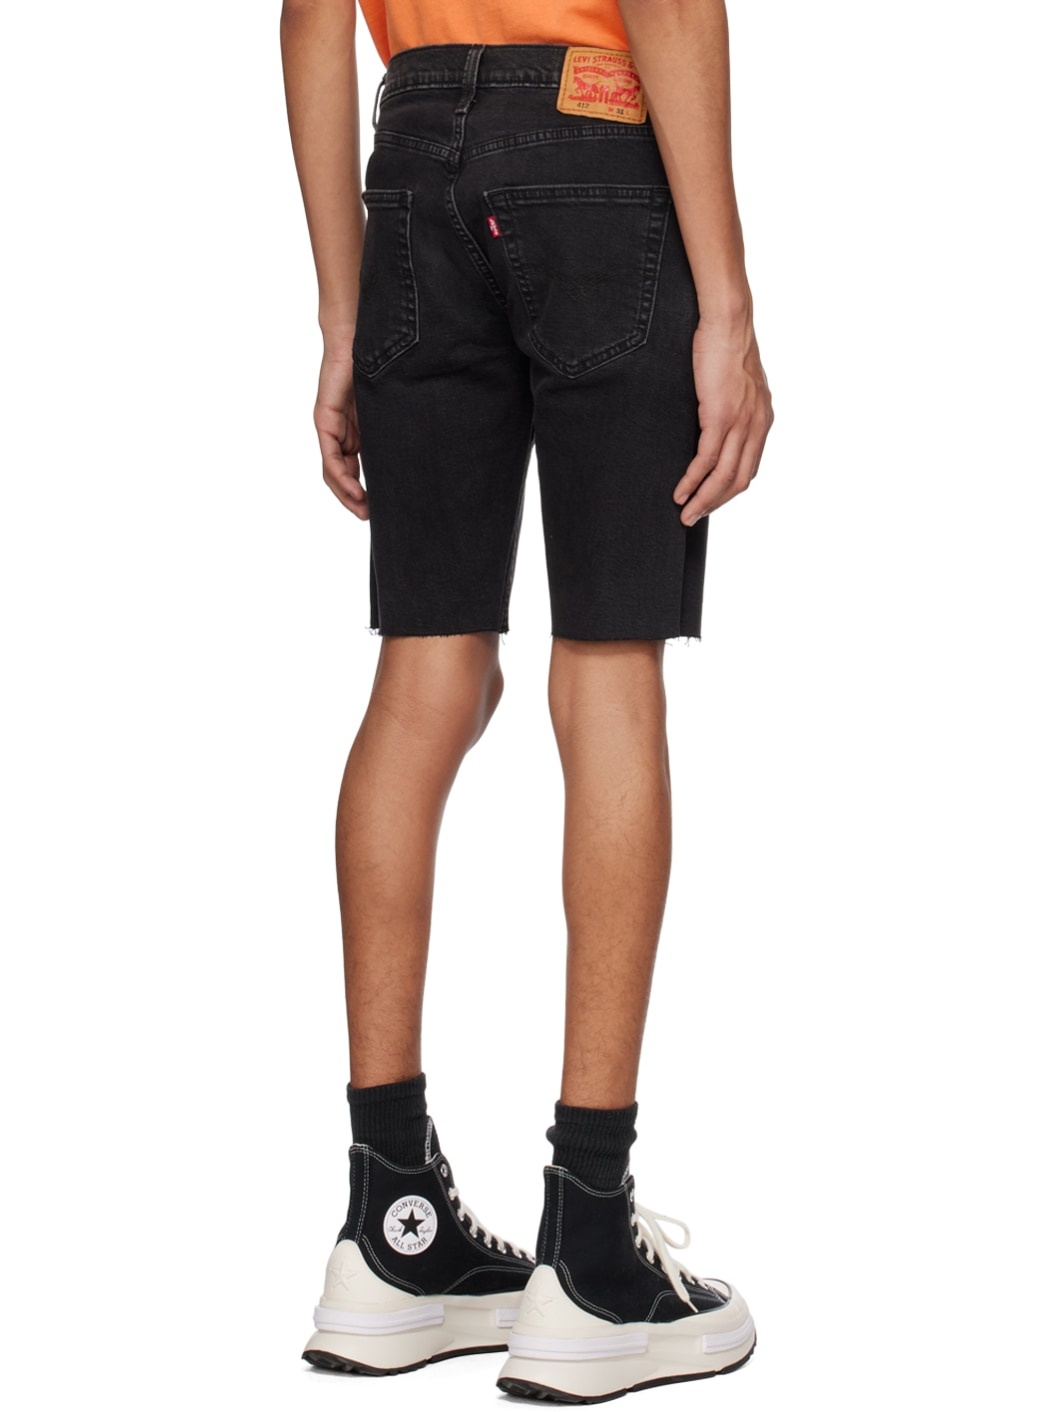 Black 412 Denim Shorts - 3